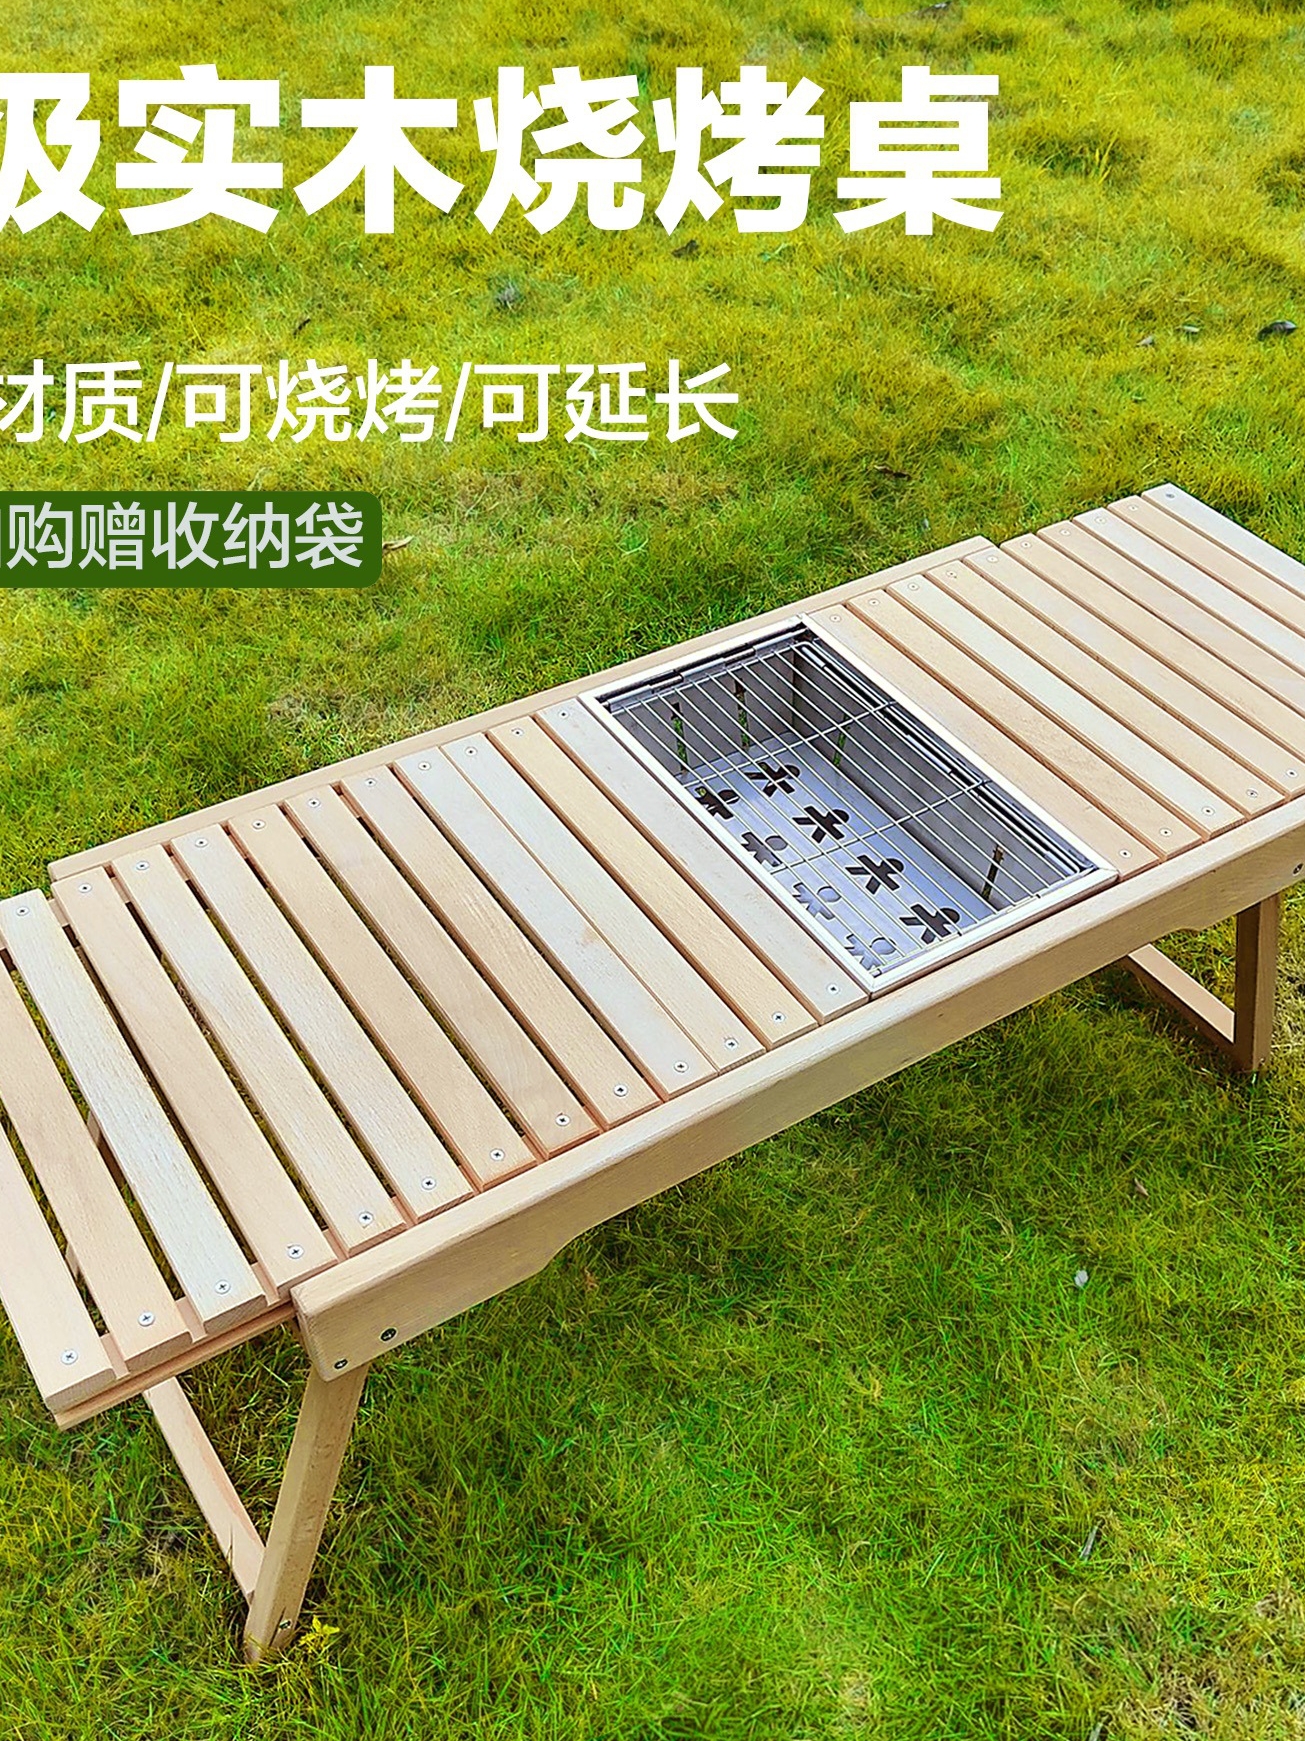 IGT可拼接摺疊實木櫸木鋁合金桌戶外露營便攜式桌子烤肉爐野餐桌 (1折)